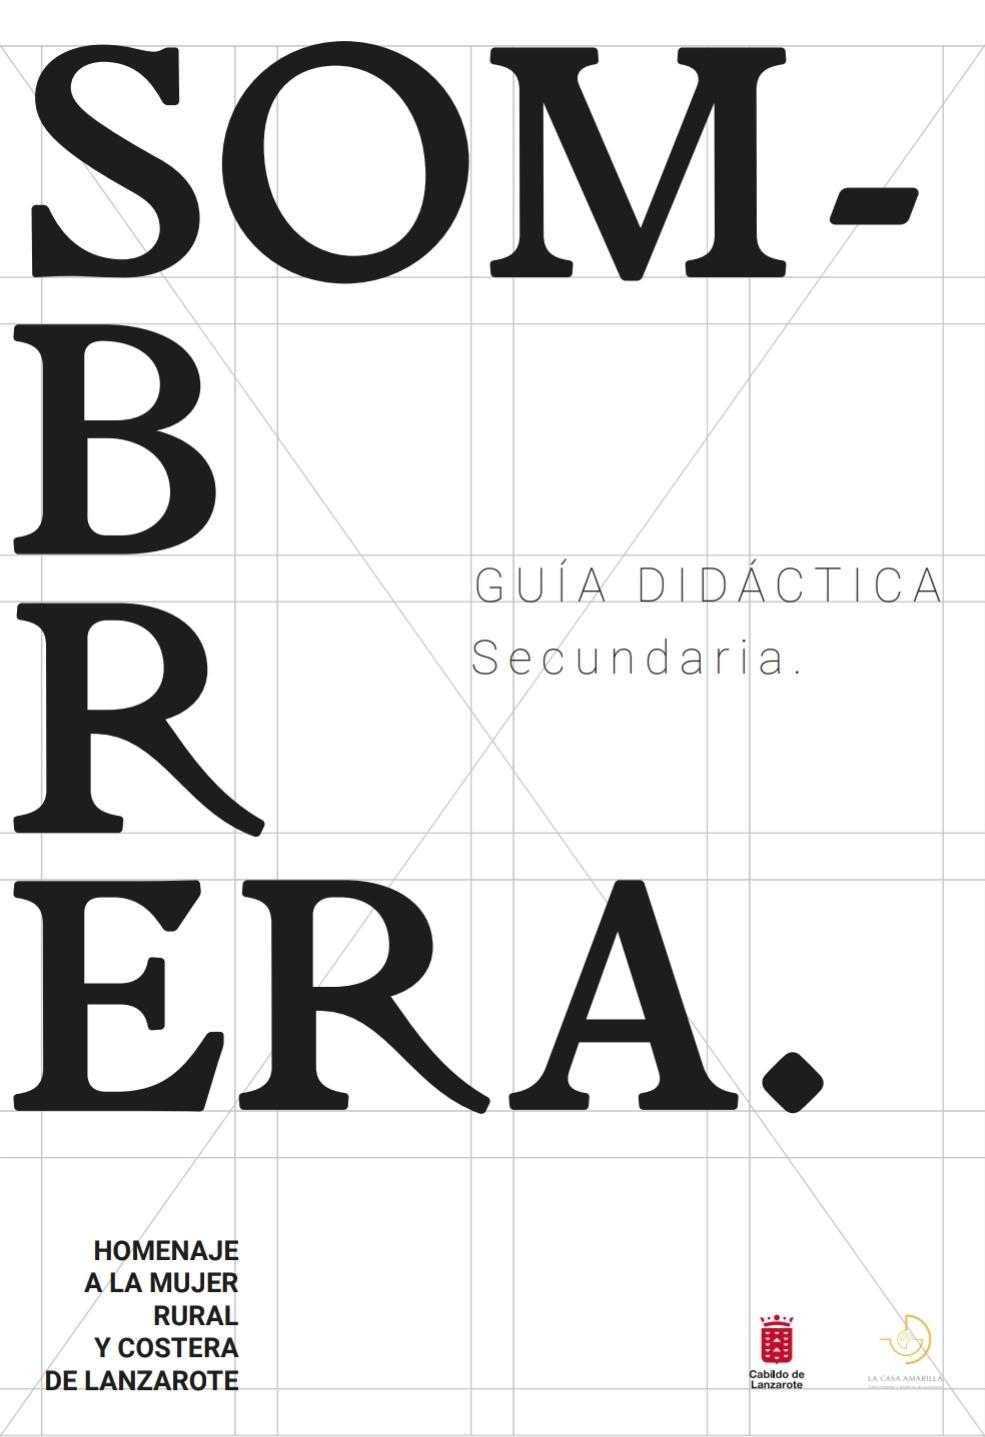 Guía didáctica de la exposición “Sombrera. Homenaje a la mujer rural y costera de Lanzarote”. Nivel secundaria